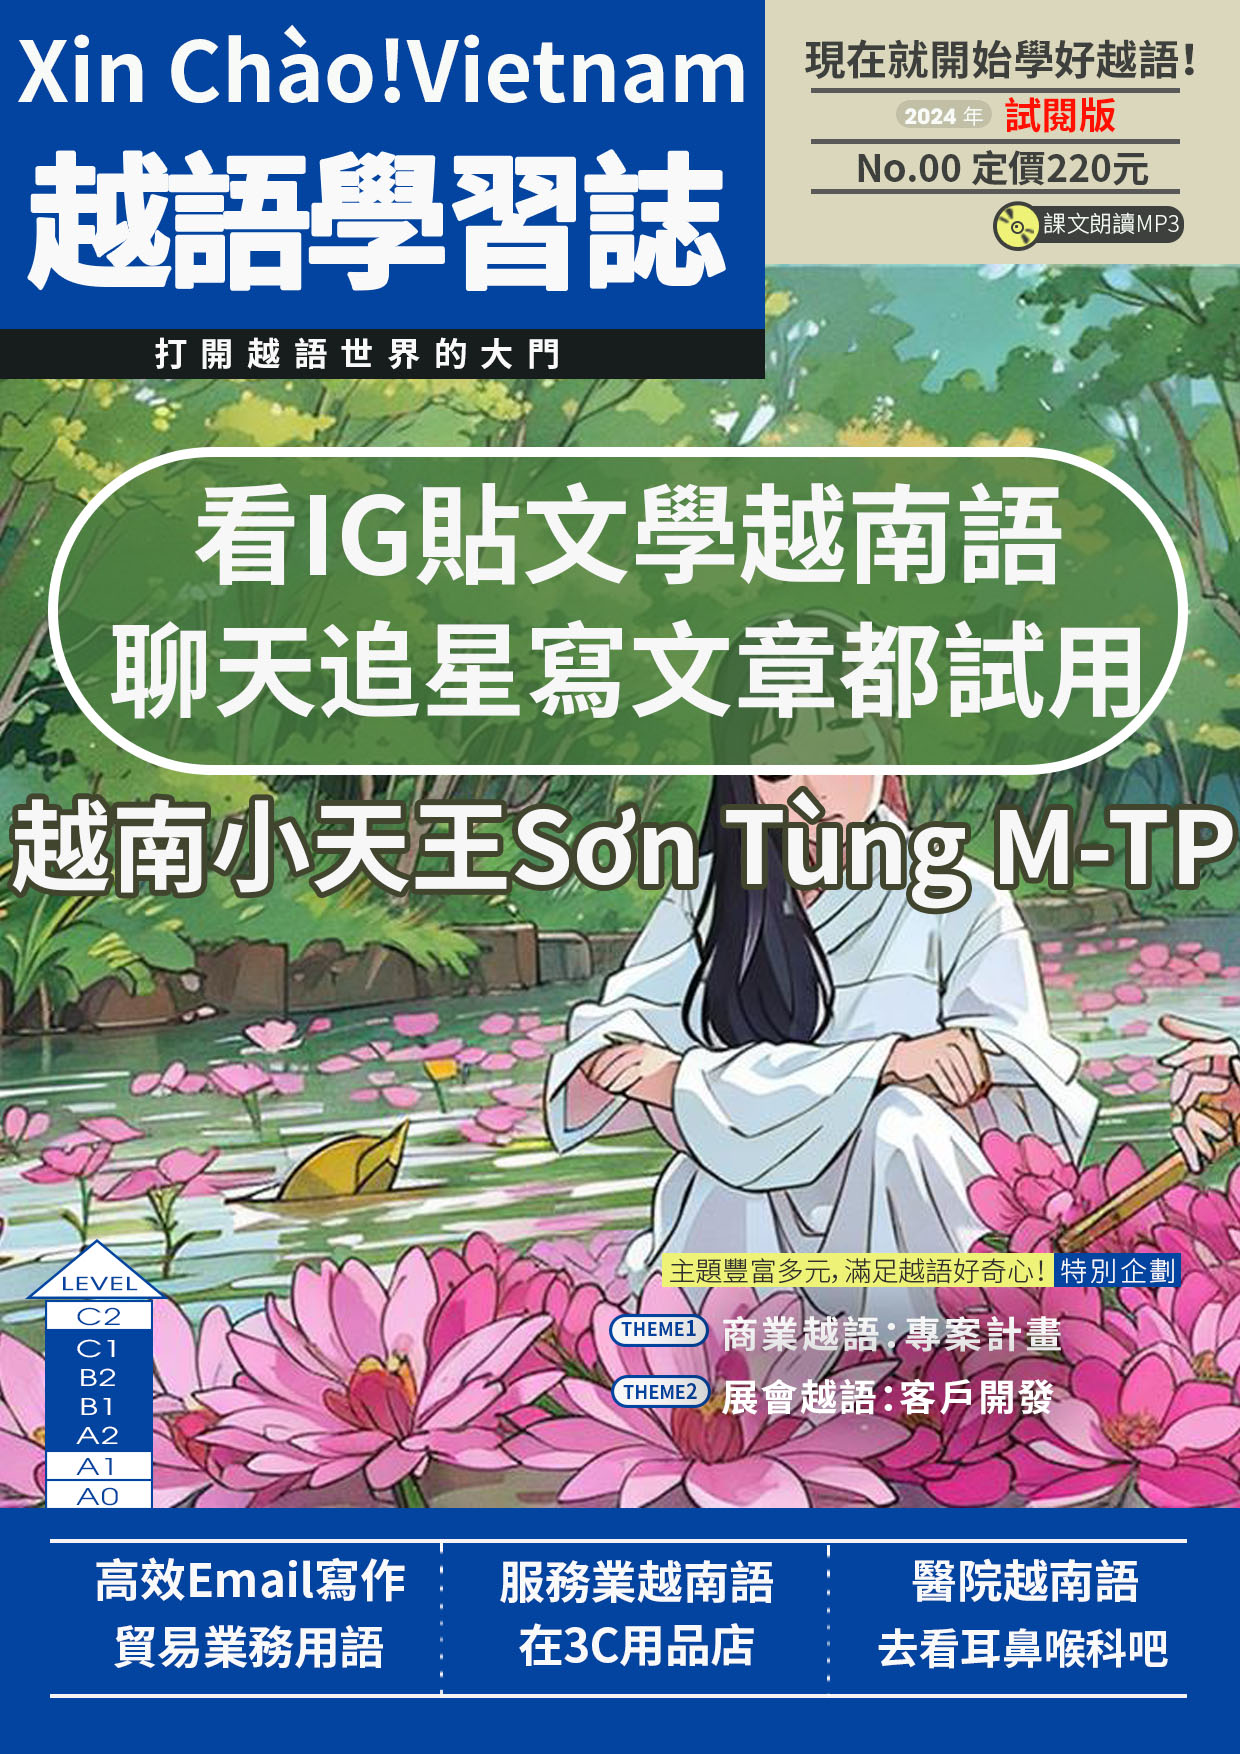 Xin Chào!Vietnam 越語學習誌-全新插圖封面體驗版